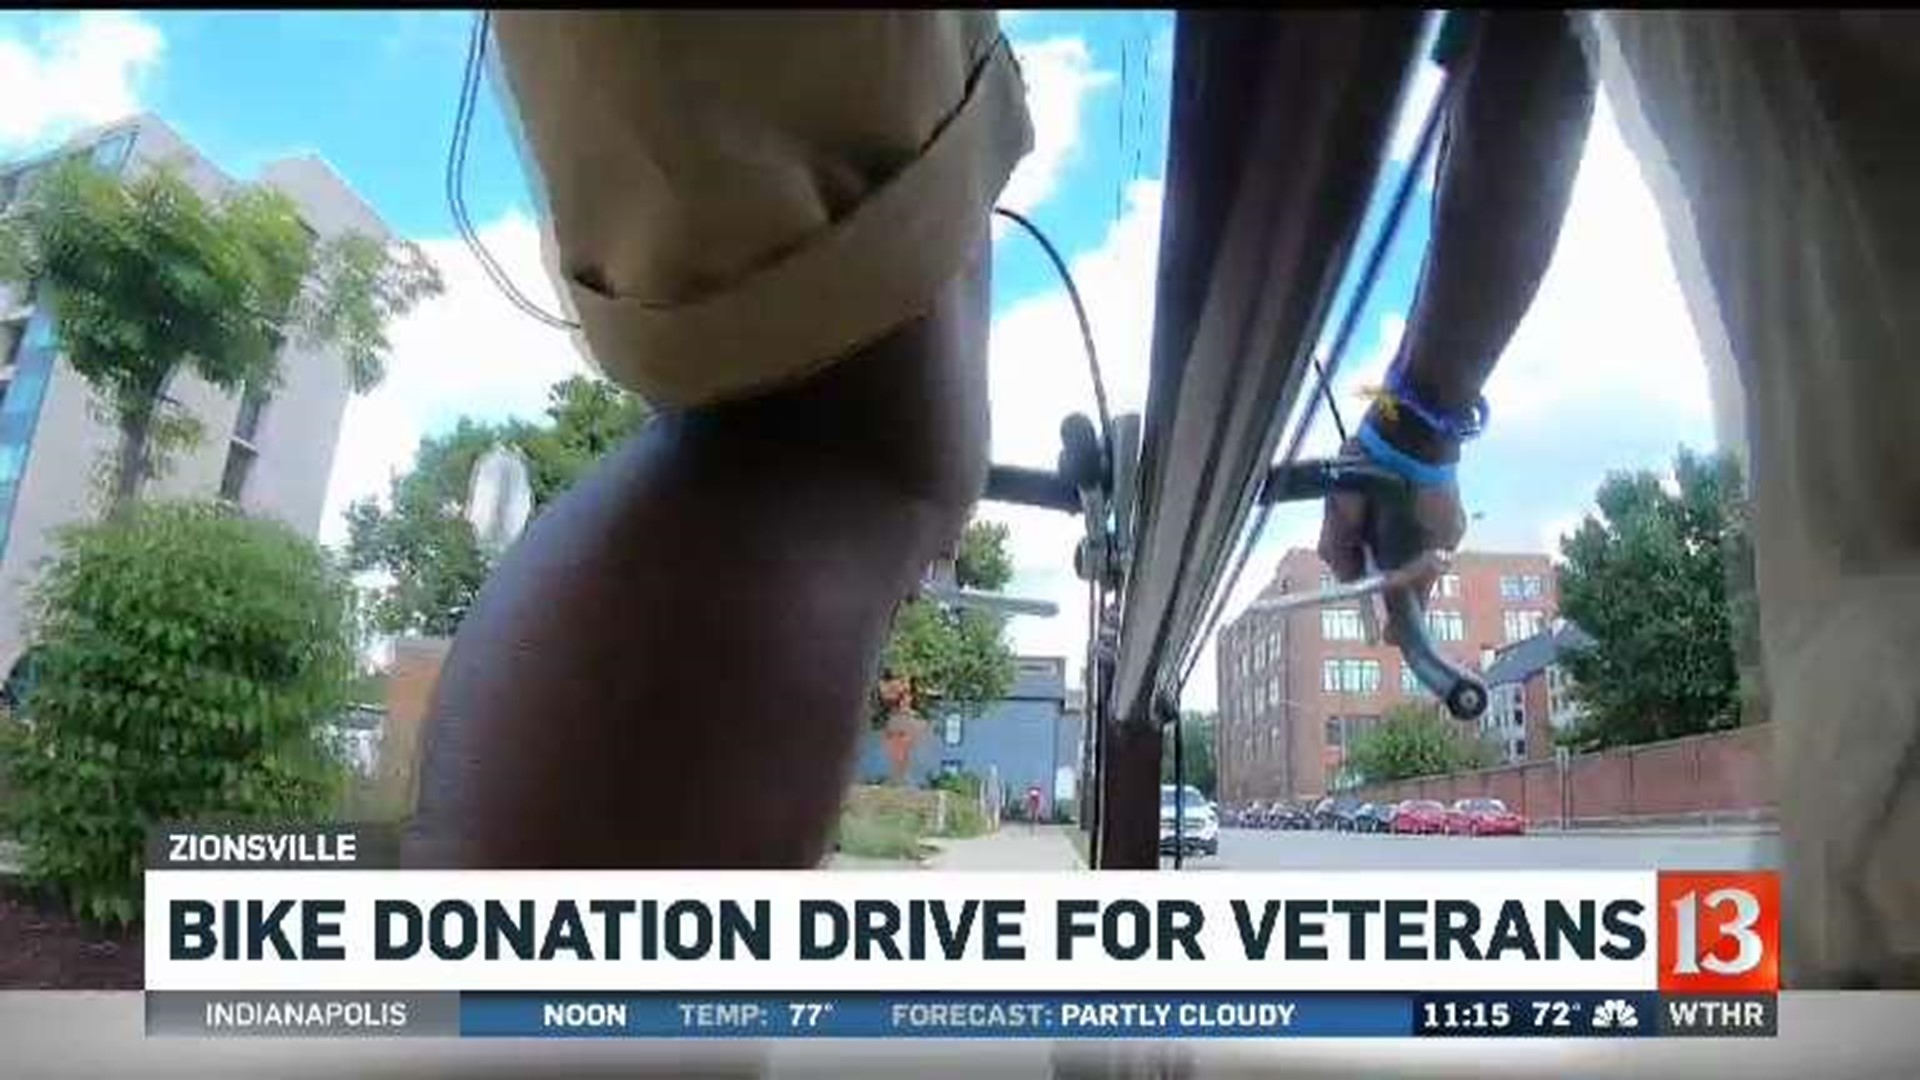 Bike donation drive for veterans